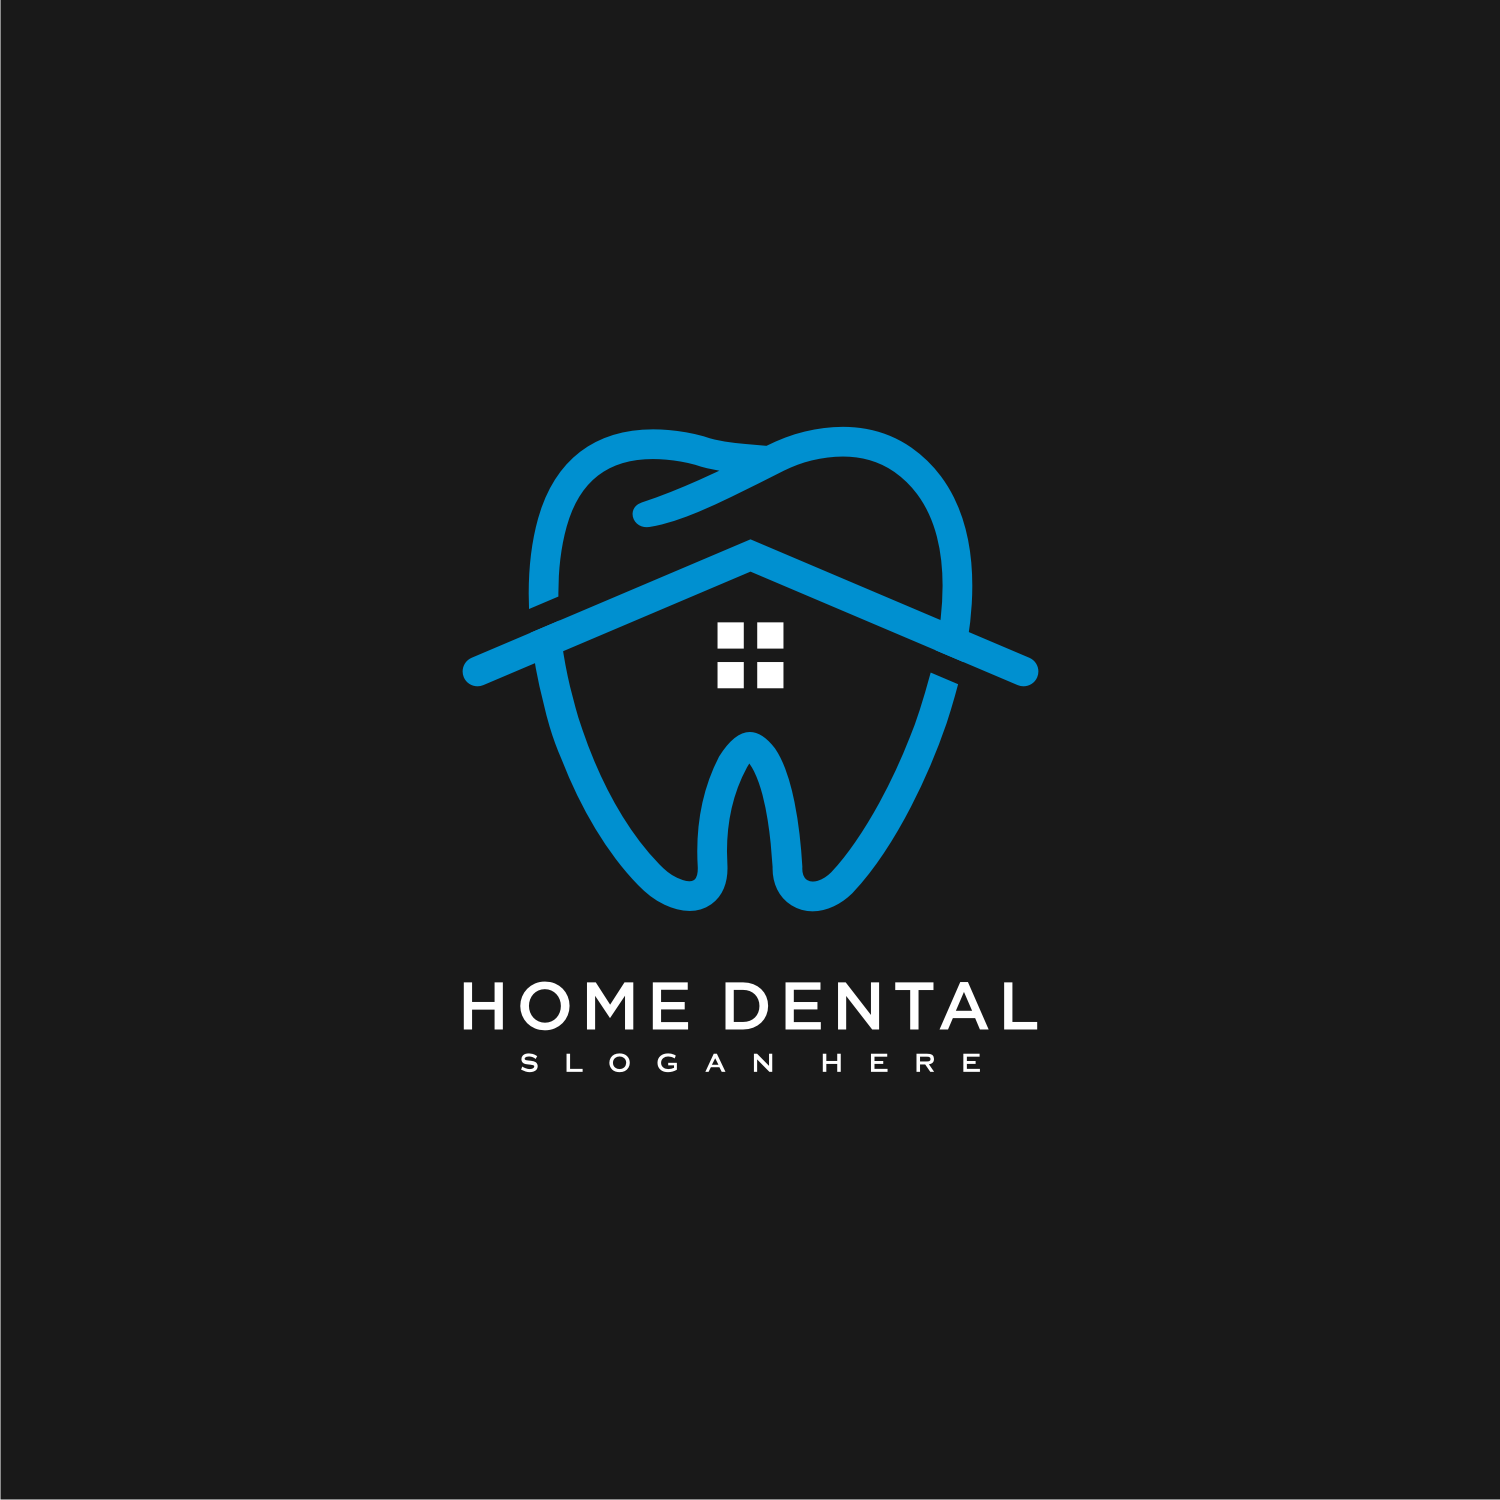 Home Dental Logo Vector Design